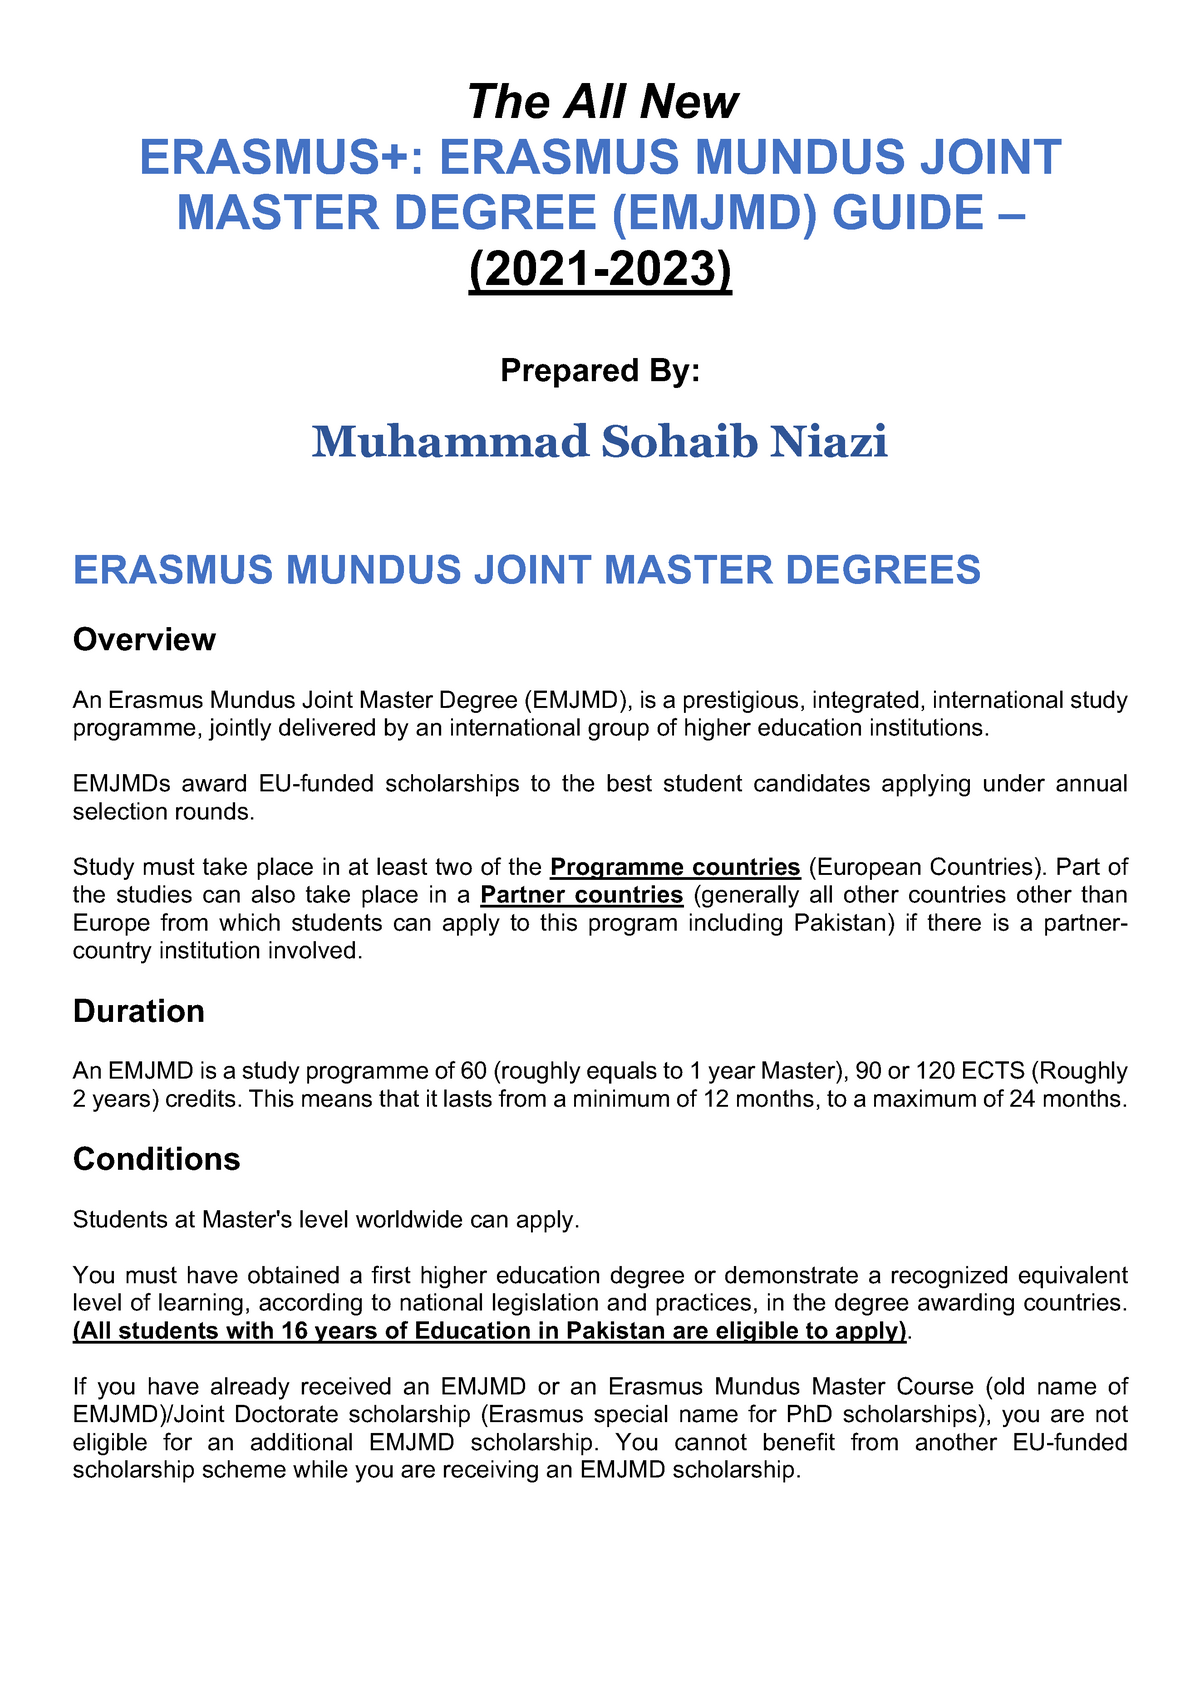 Emjmd Application Guide (202123) Sohaib Niazi The All New ERASMUS+